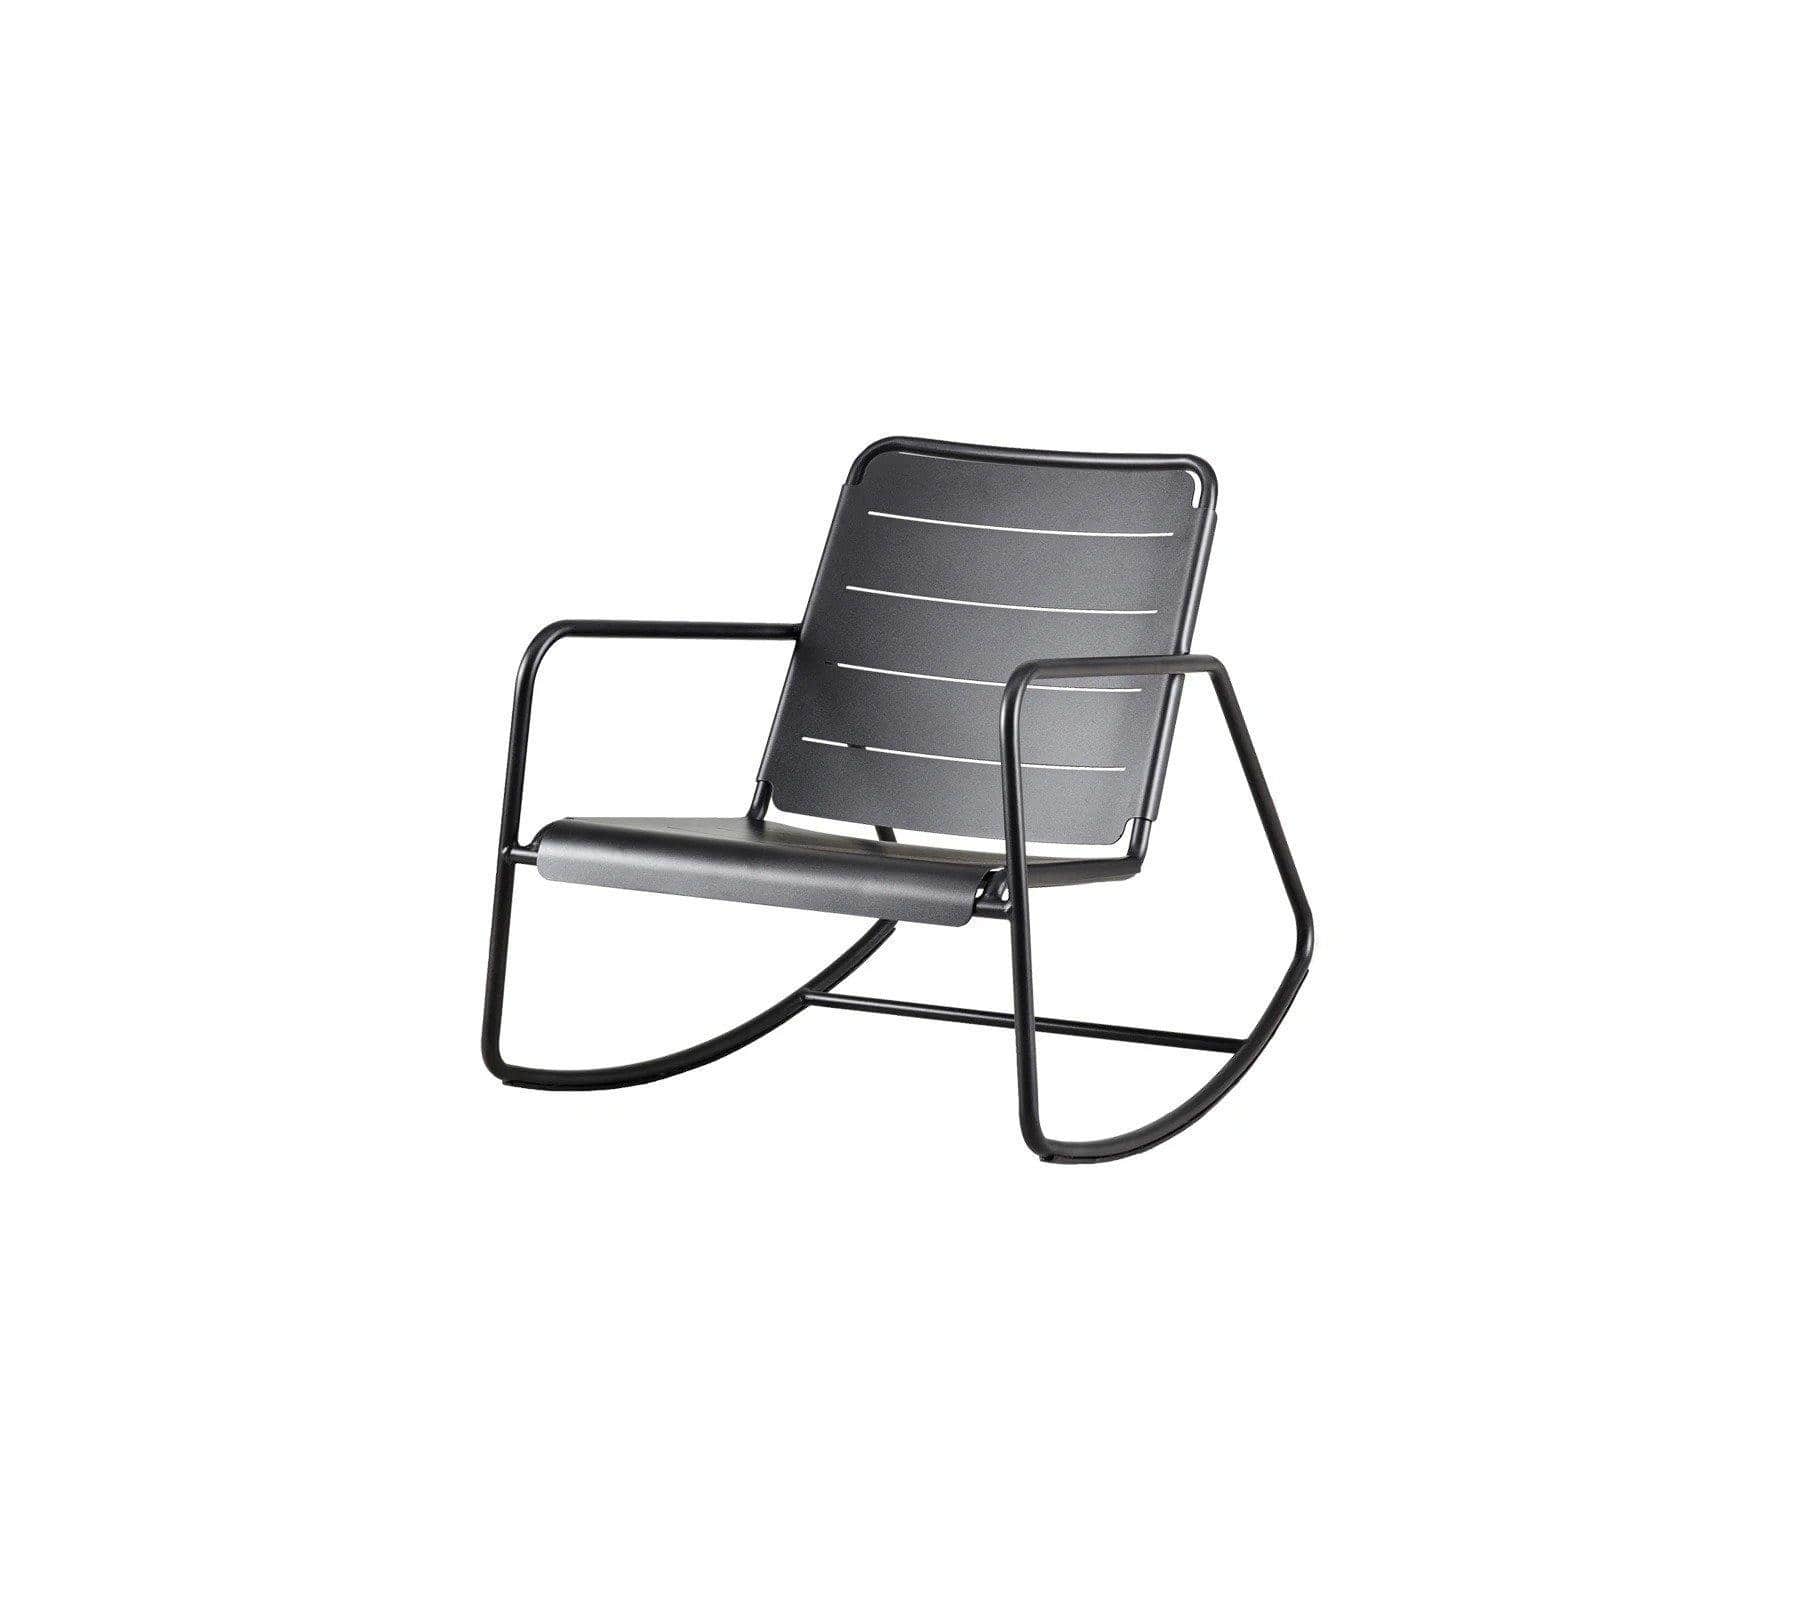 Cane-Line Denmark Outdoor Chairs Copenhagen rocking chair